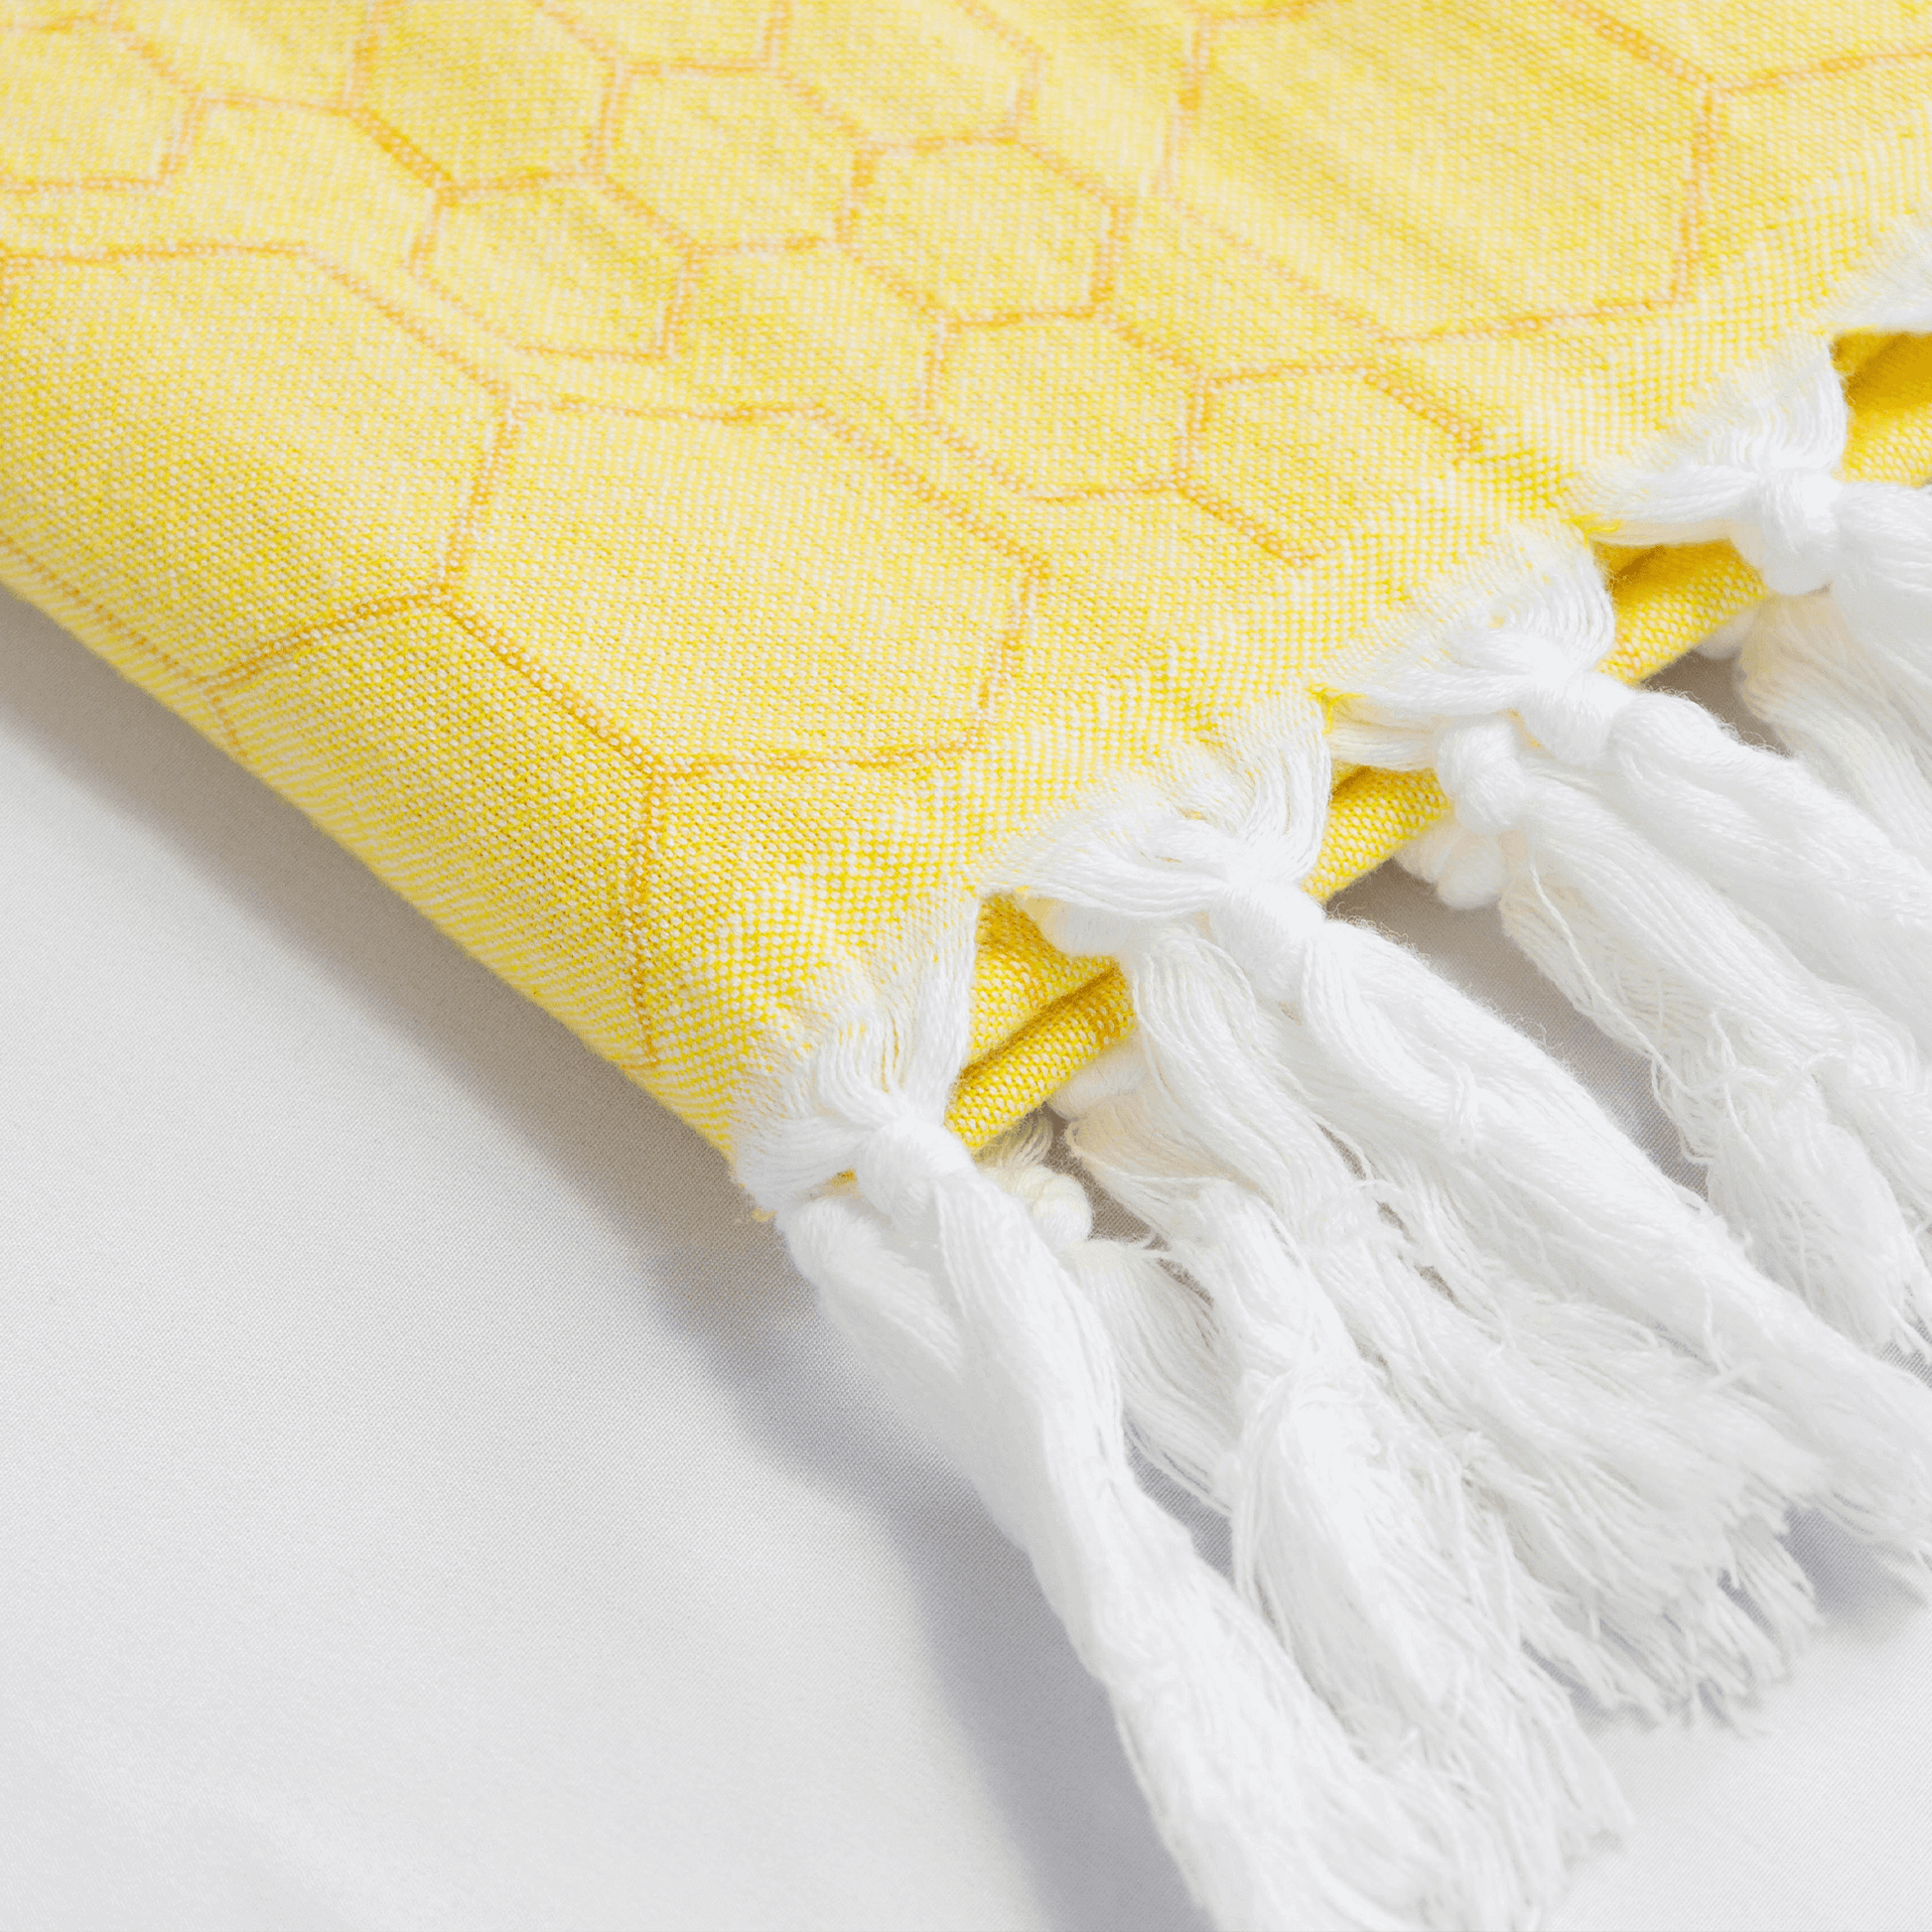 Yellow Turkish Hand Towel